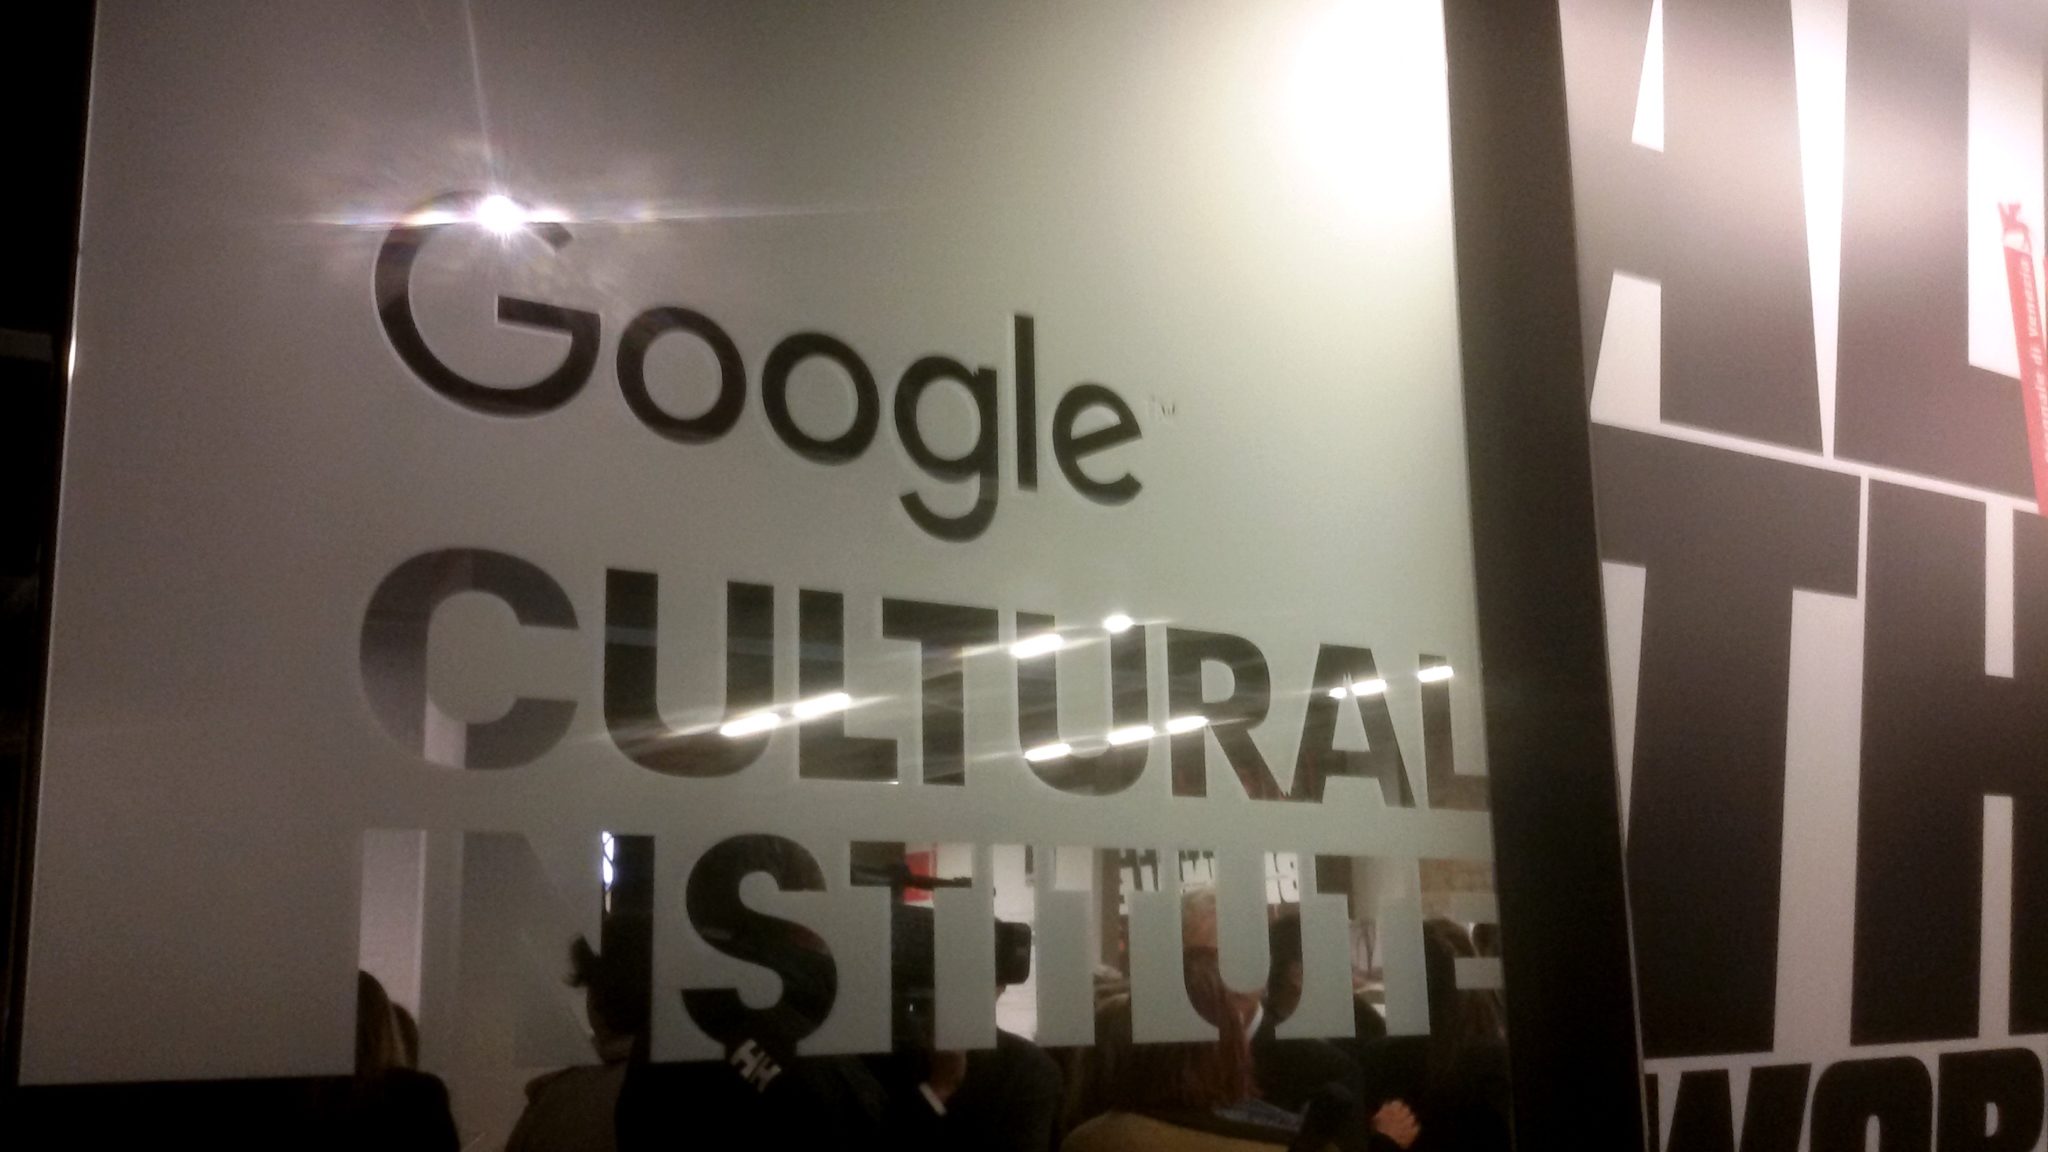 Google Culturale Institute / Biennale 2015